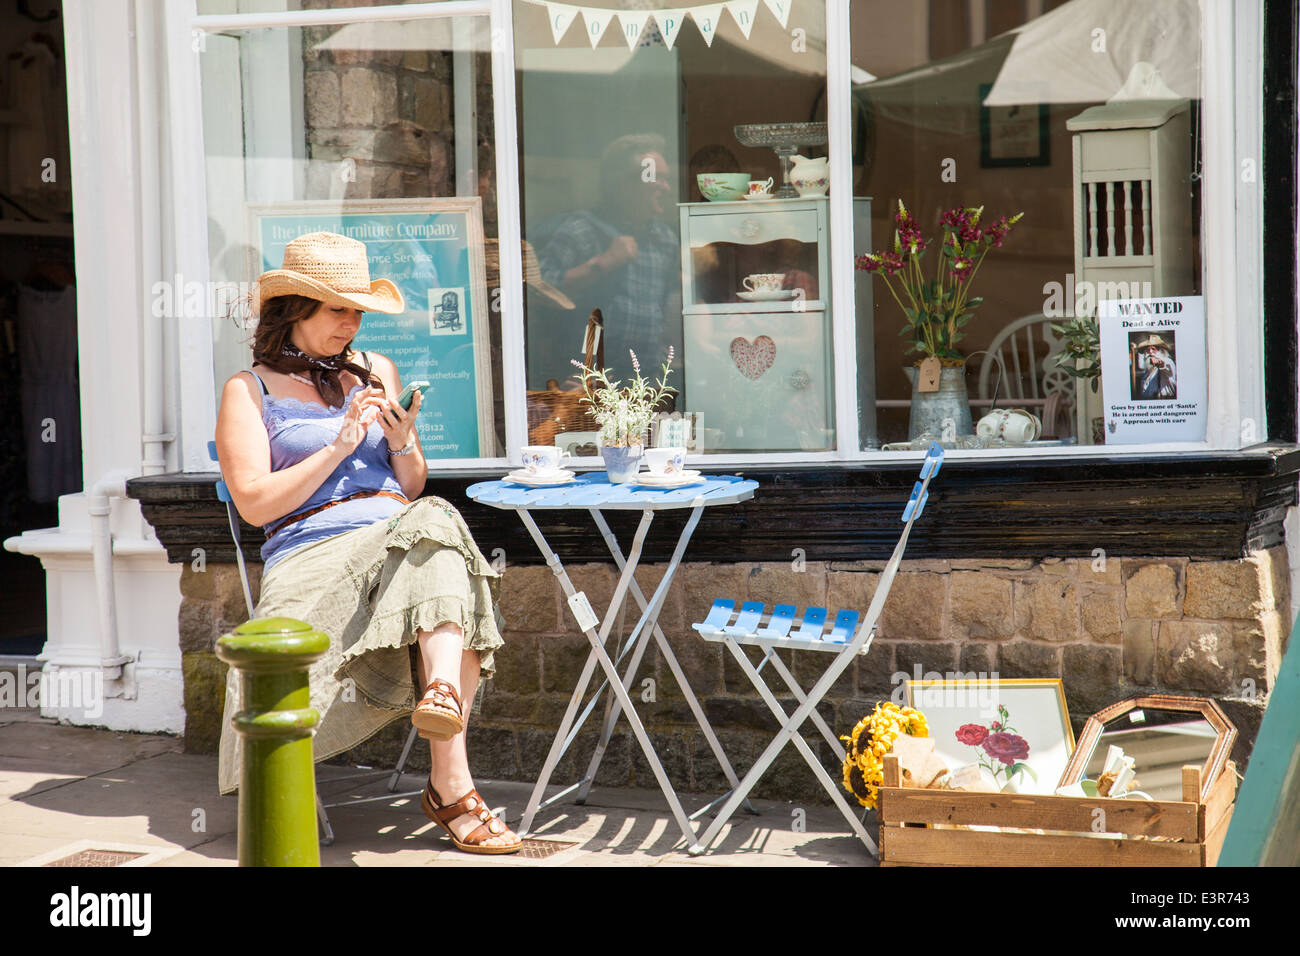 UK ,Angleterre Poireau, Staffordshire, une jeune femme assise sur une chaise à l'extérieur d'un magasin de meubles la messagerie texte sur un téléphone mobile, Banque D'Images